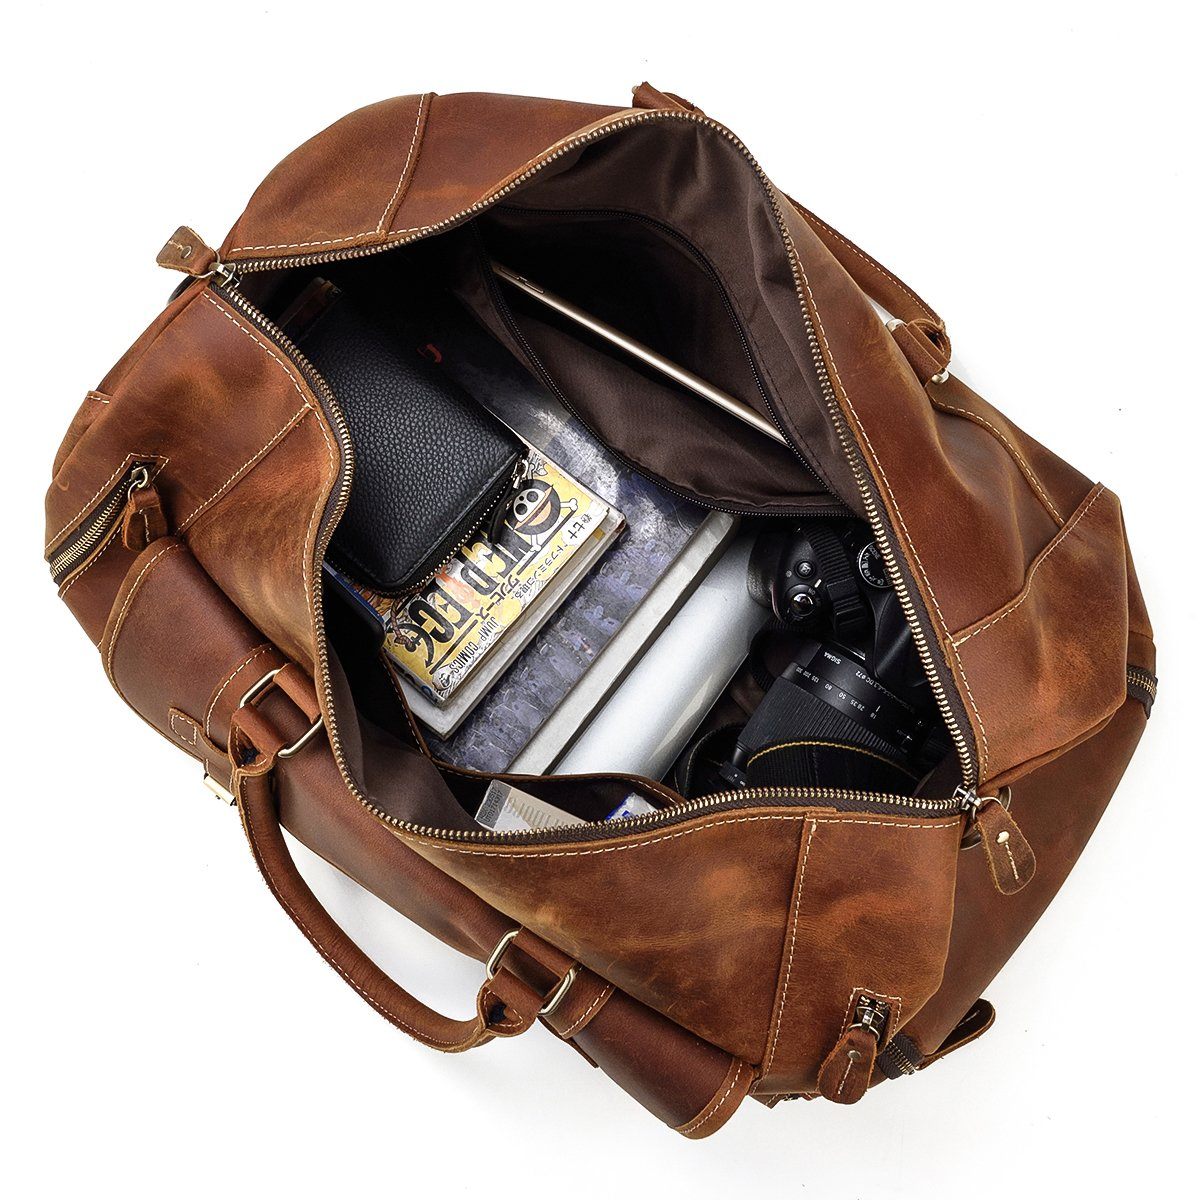 Brown Full-grain Leather Vintage Travel Duffle Bag for Men & Women